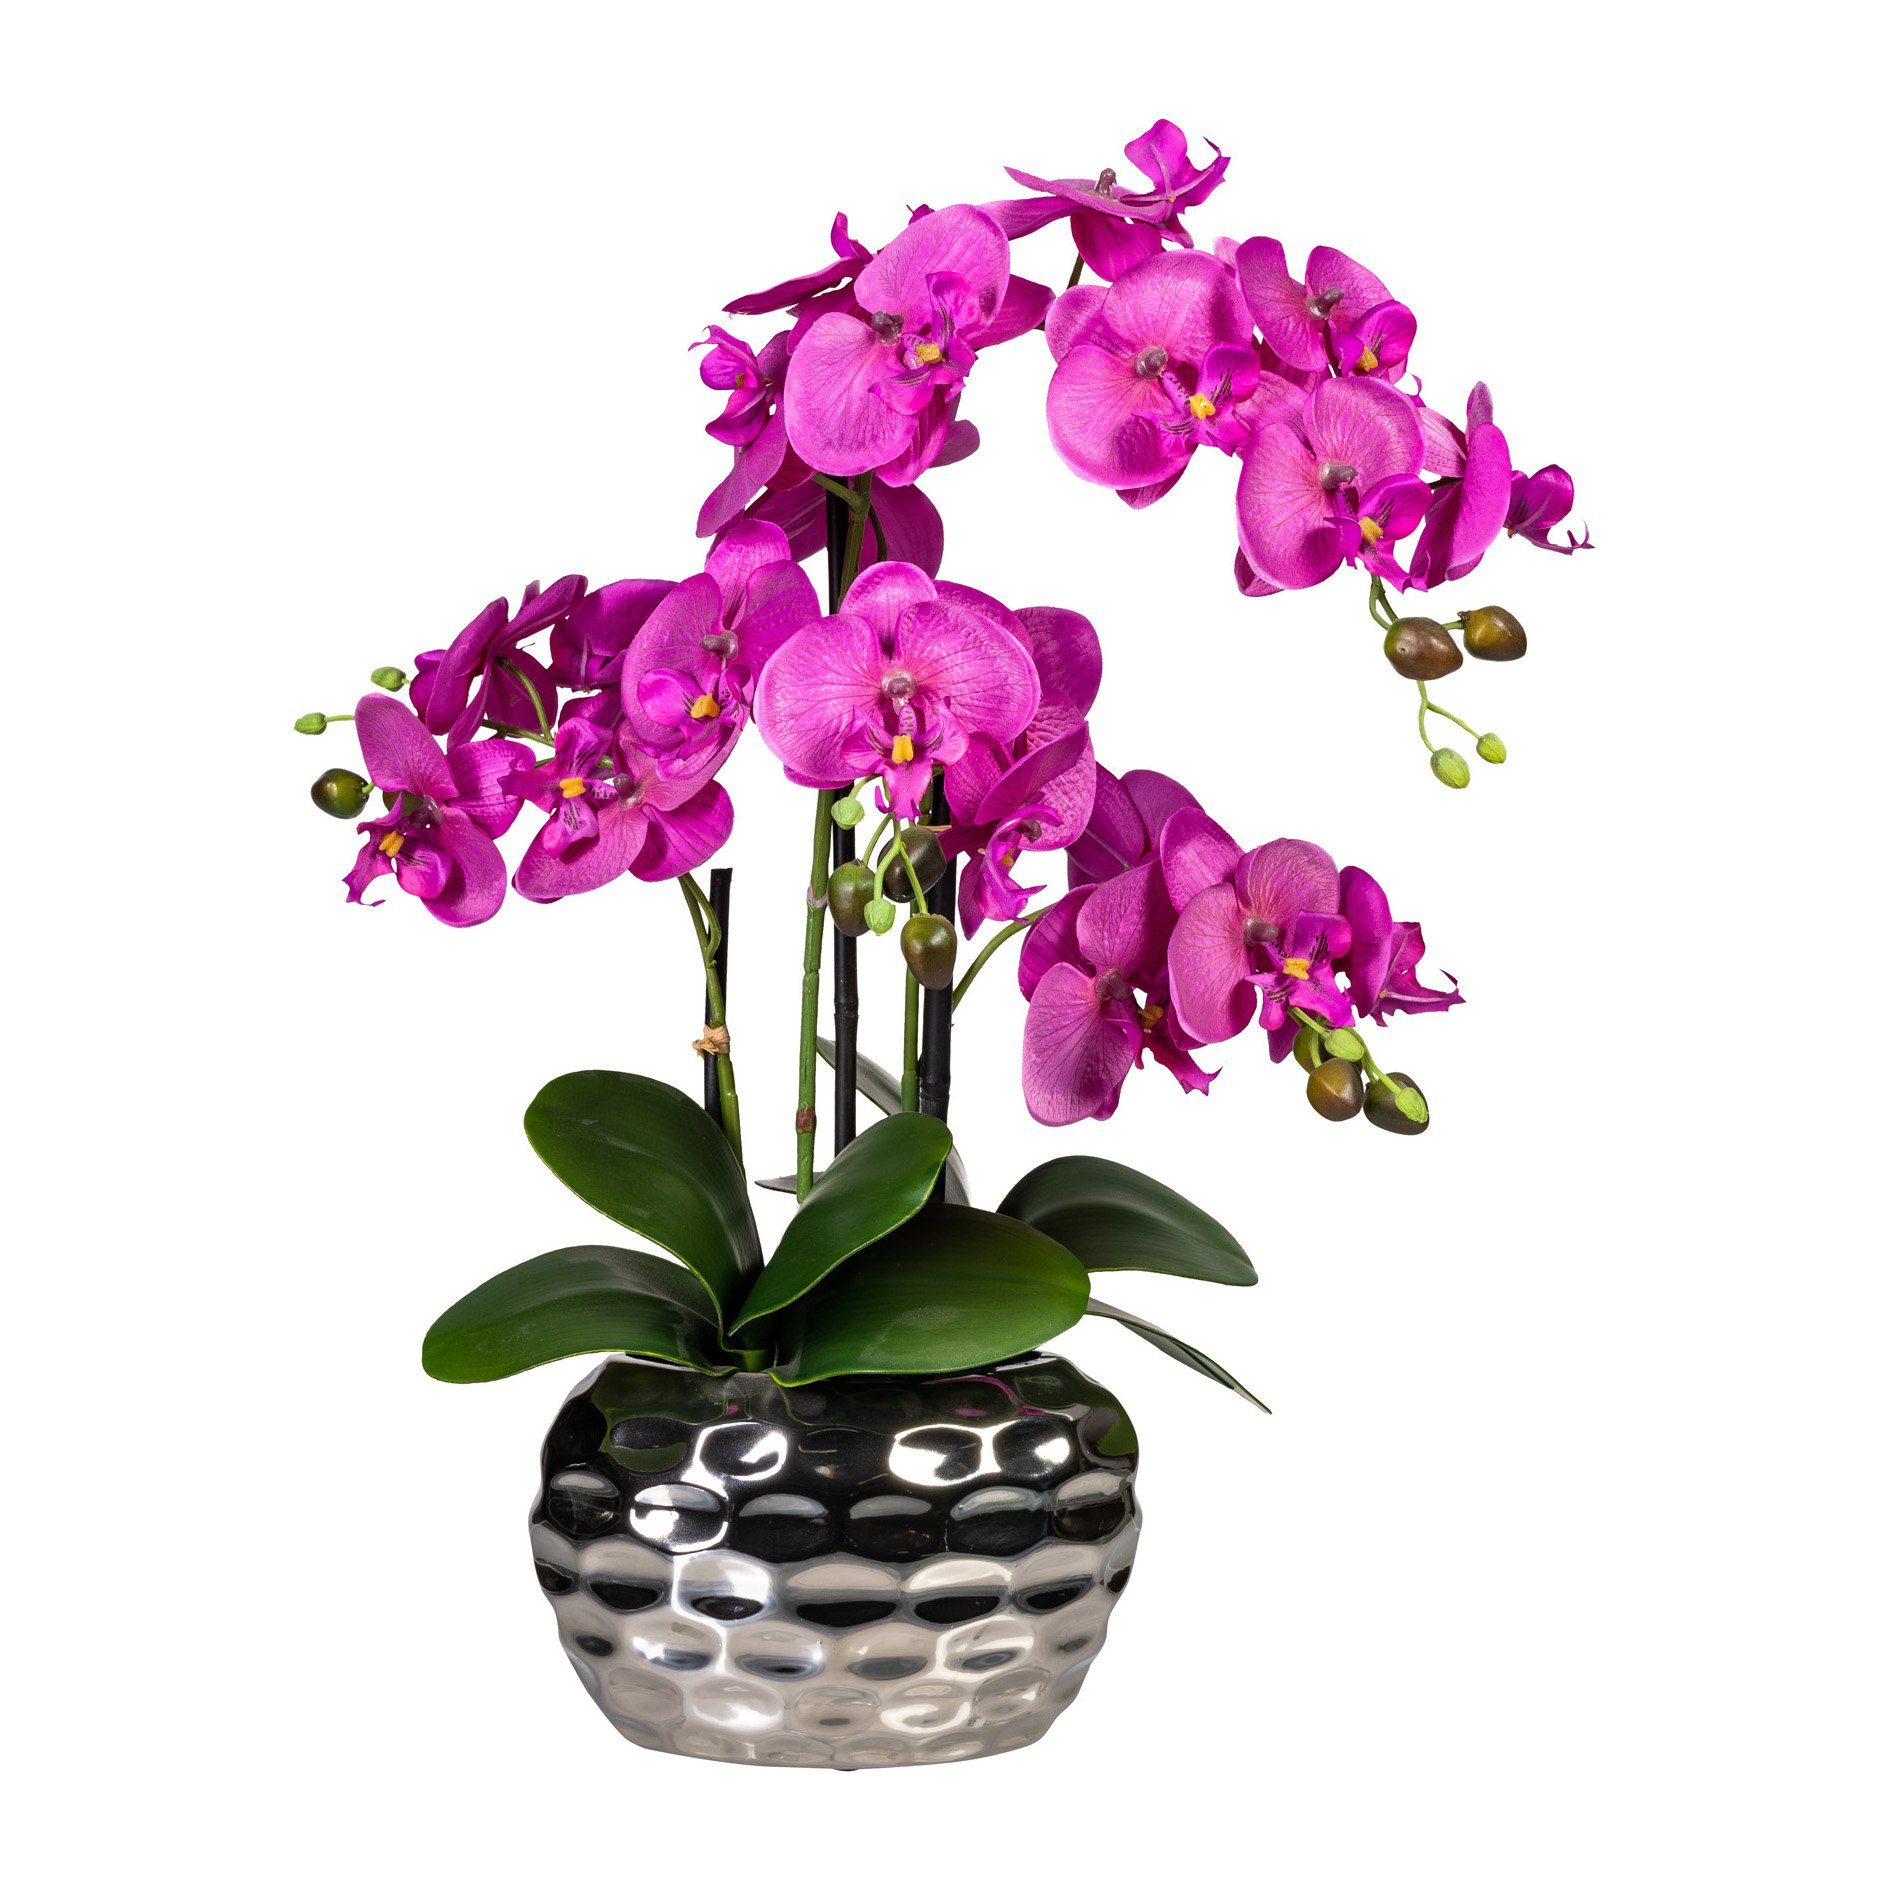 Jetzt supergünstig per Versand bestellen Kunstorchidee Kunstpflanze Orchidee Orchidee, pink Creativ cm, im Keramiktopf Höhe green, 55.00